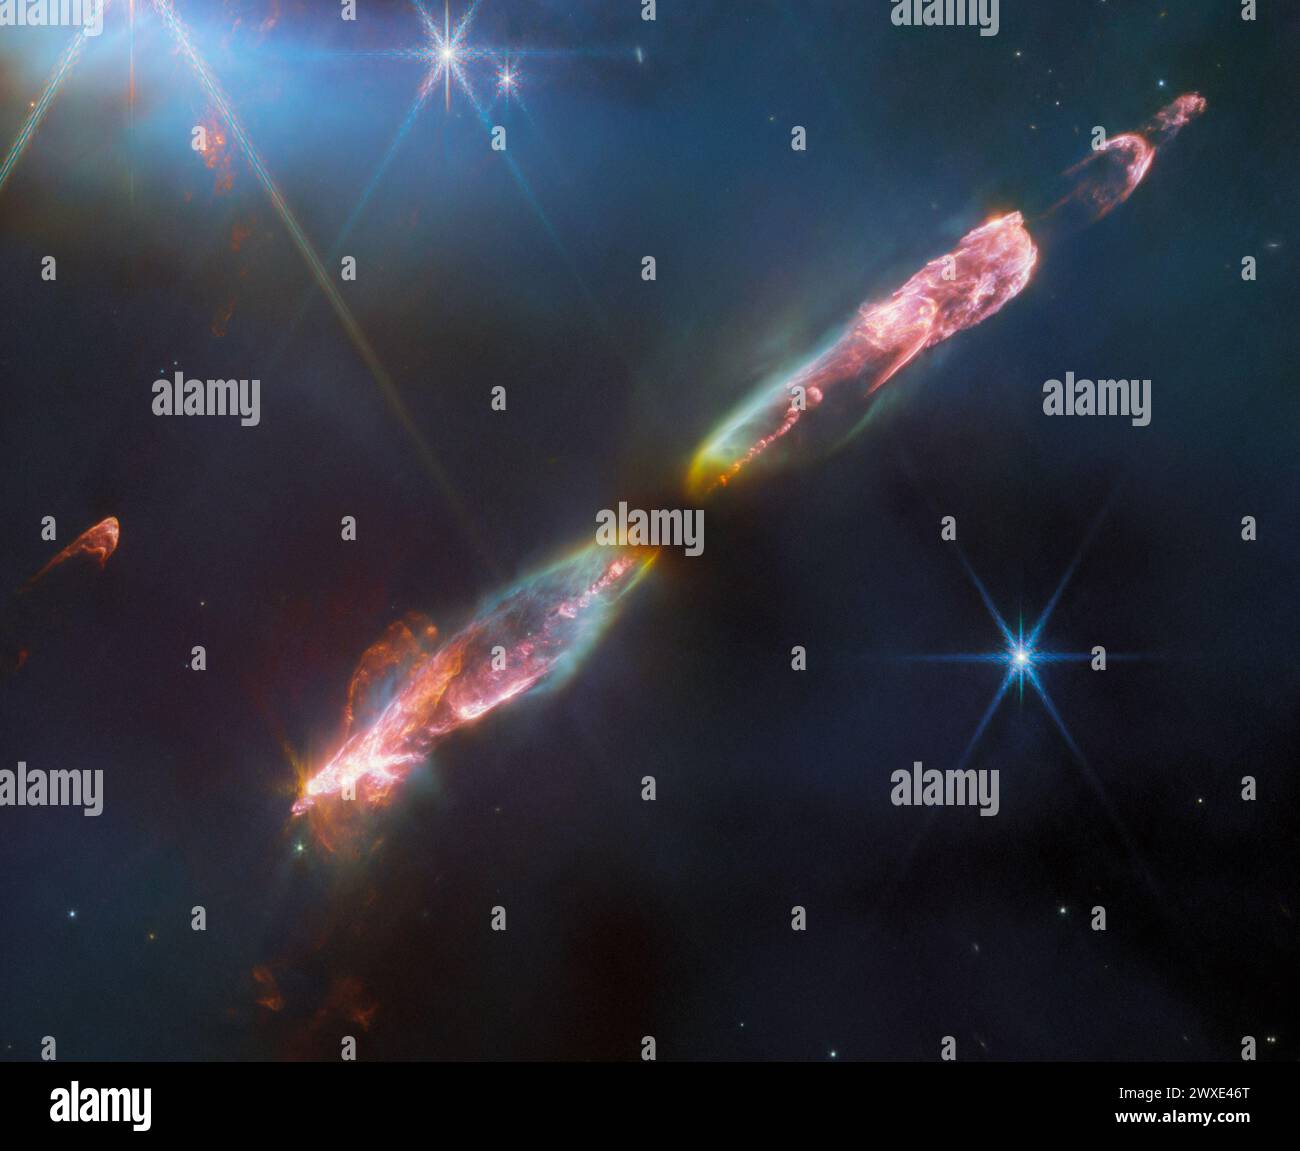 Webb Snaps Supersonic Outflow of Young Star della NASA. Una stella appena nata con getti supersonici di gas che sprigionano dai suoi poli. Qui ha solo poche decine di migliaia di anni, ma quando crescerà, sarà molto simile al nostro Sole. Le regioni luminose intorno alle stelle neonate, come si vede qui, sono chiamate oggetti Herbig-Haro. Questo specifico oggetto Herbig-Haro è chiamato Herbig-Haro (HH) 211. A circa 1.000 anni luce di distanza dalla Terra, è uno degli oggetti più giovani e vicini del suo tipo. Crediti: ESA/Webb, NASA, CSA, T.Ray Foto Stock